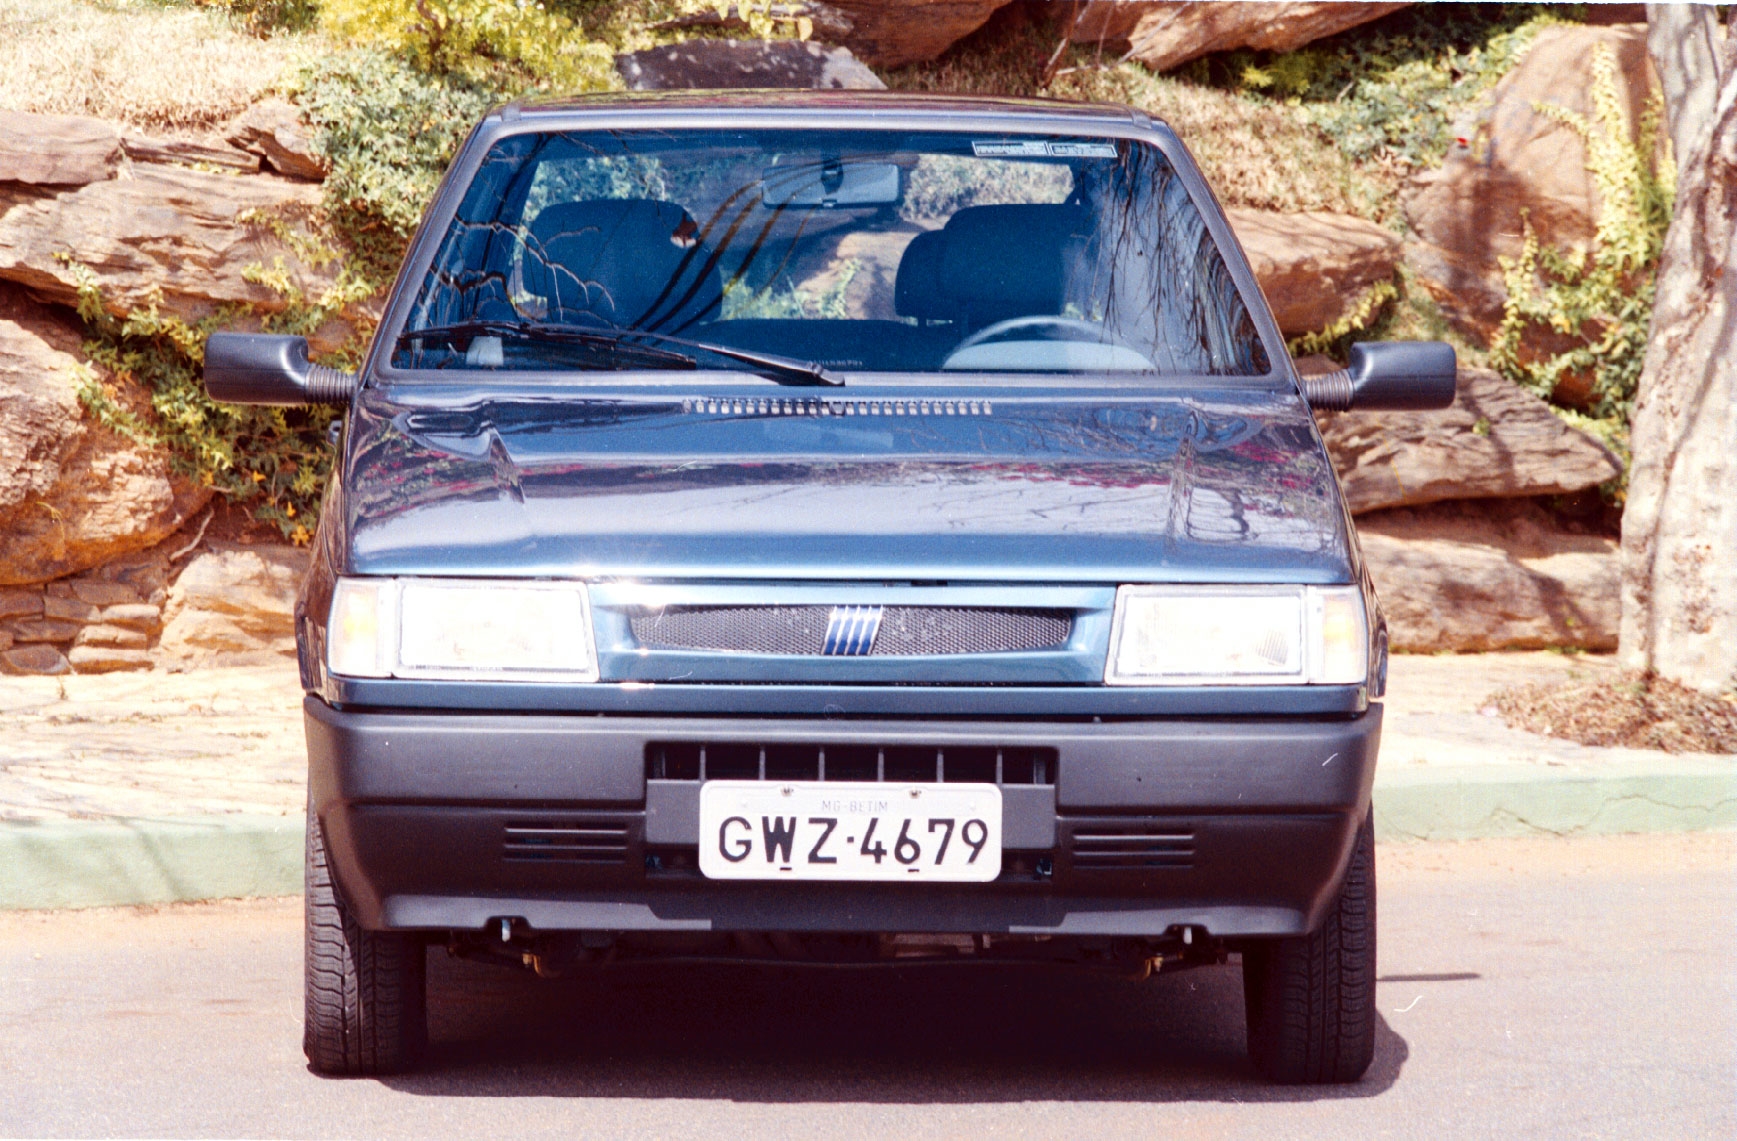 Fiat Uno Mille Smart modelo 2000 azul metálico de frente na frente do muro de pedras